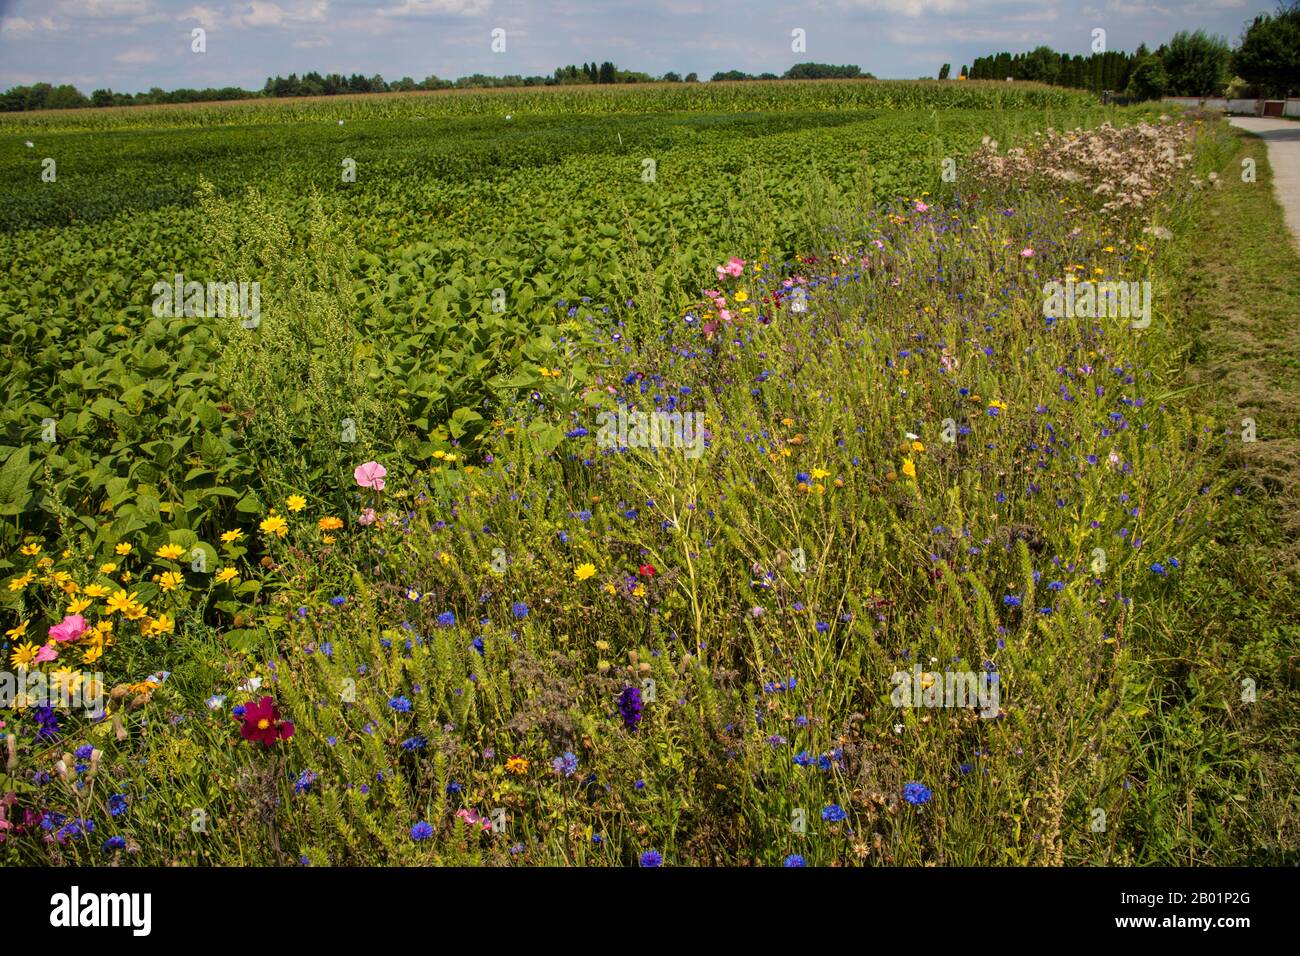 Bordure florissante dans un champ avec des plantes semées, Allemagne Banque D'Images